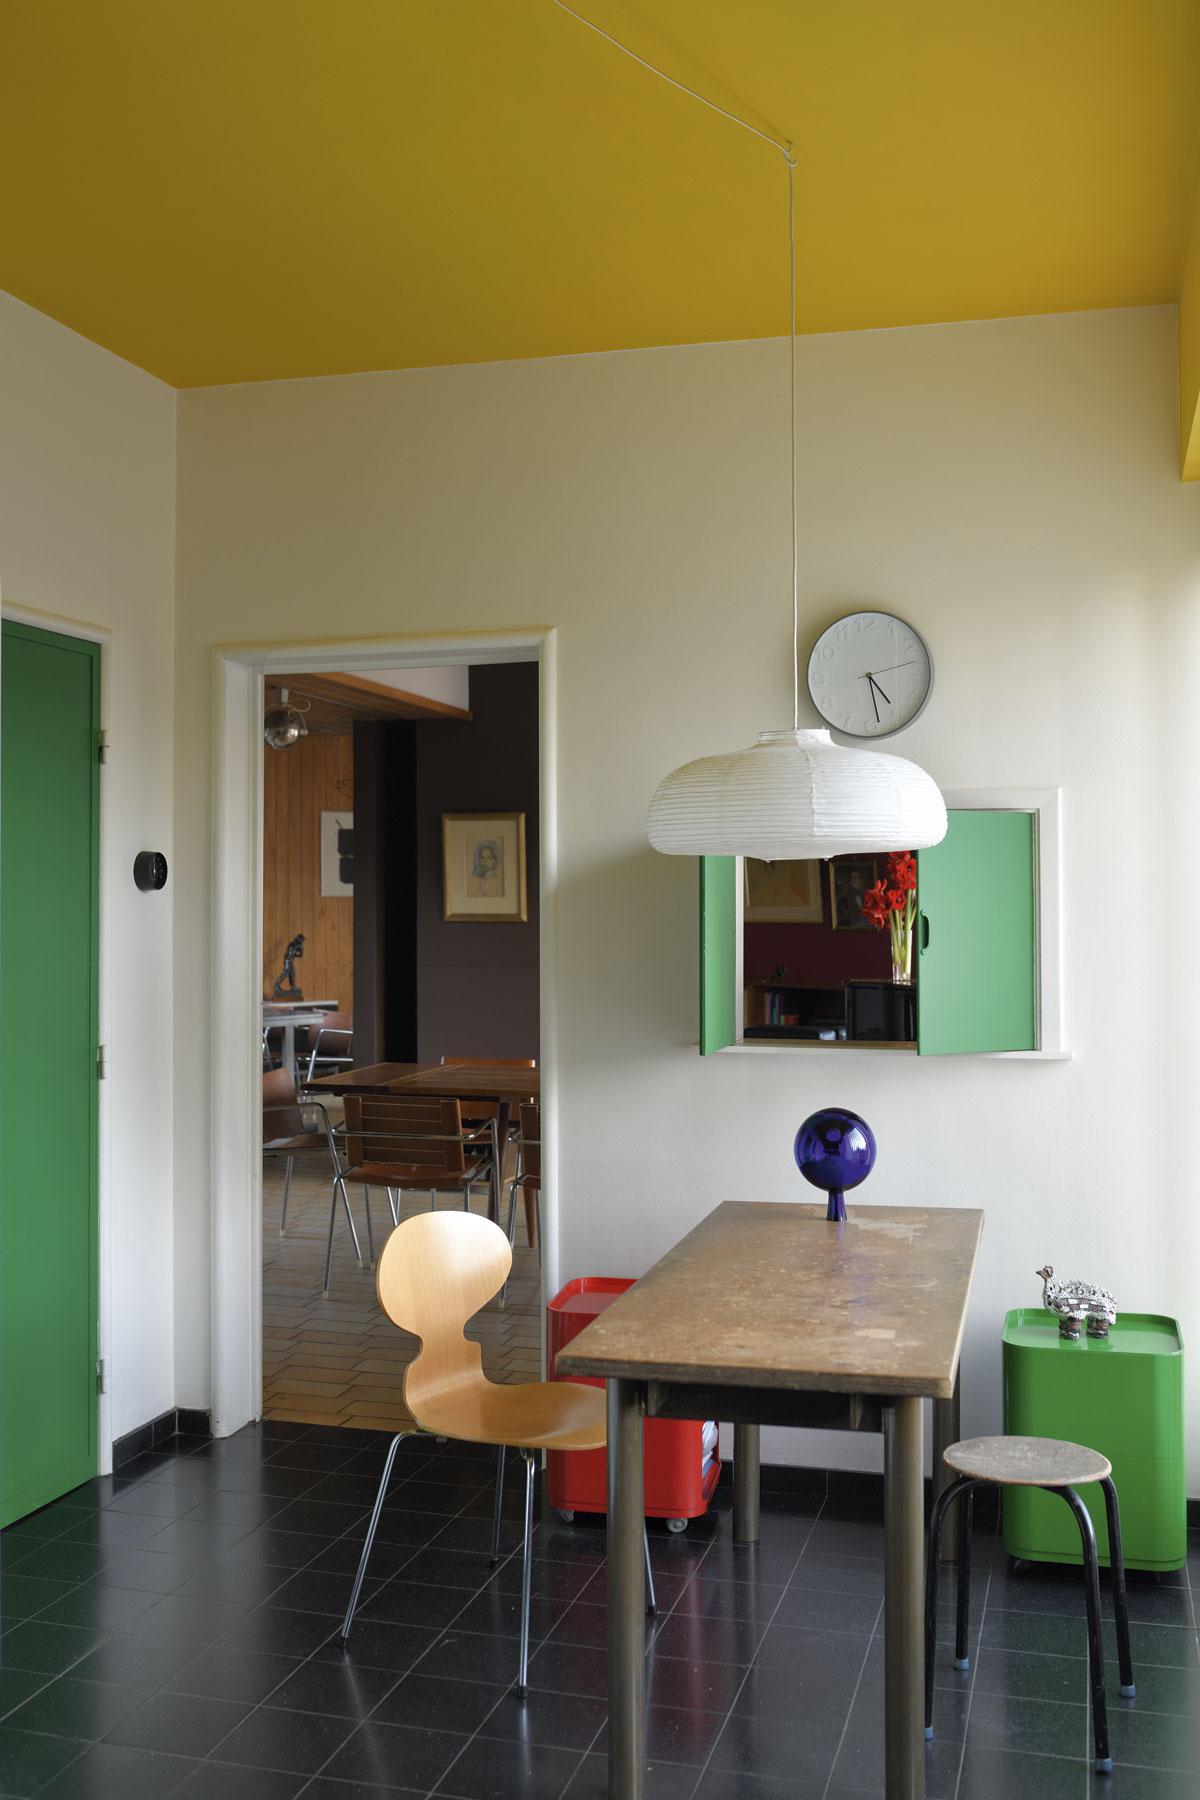 In de keuken dragen de groene kleur van de deur en het luik bij tot de vrolijkheid van het interieur.